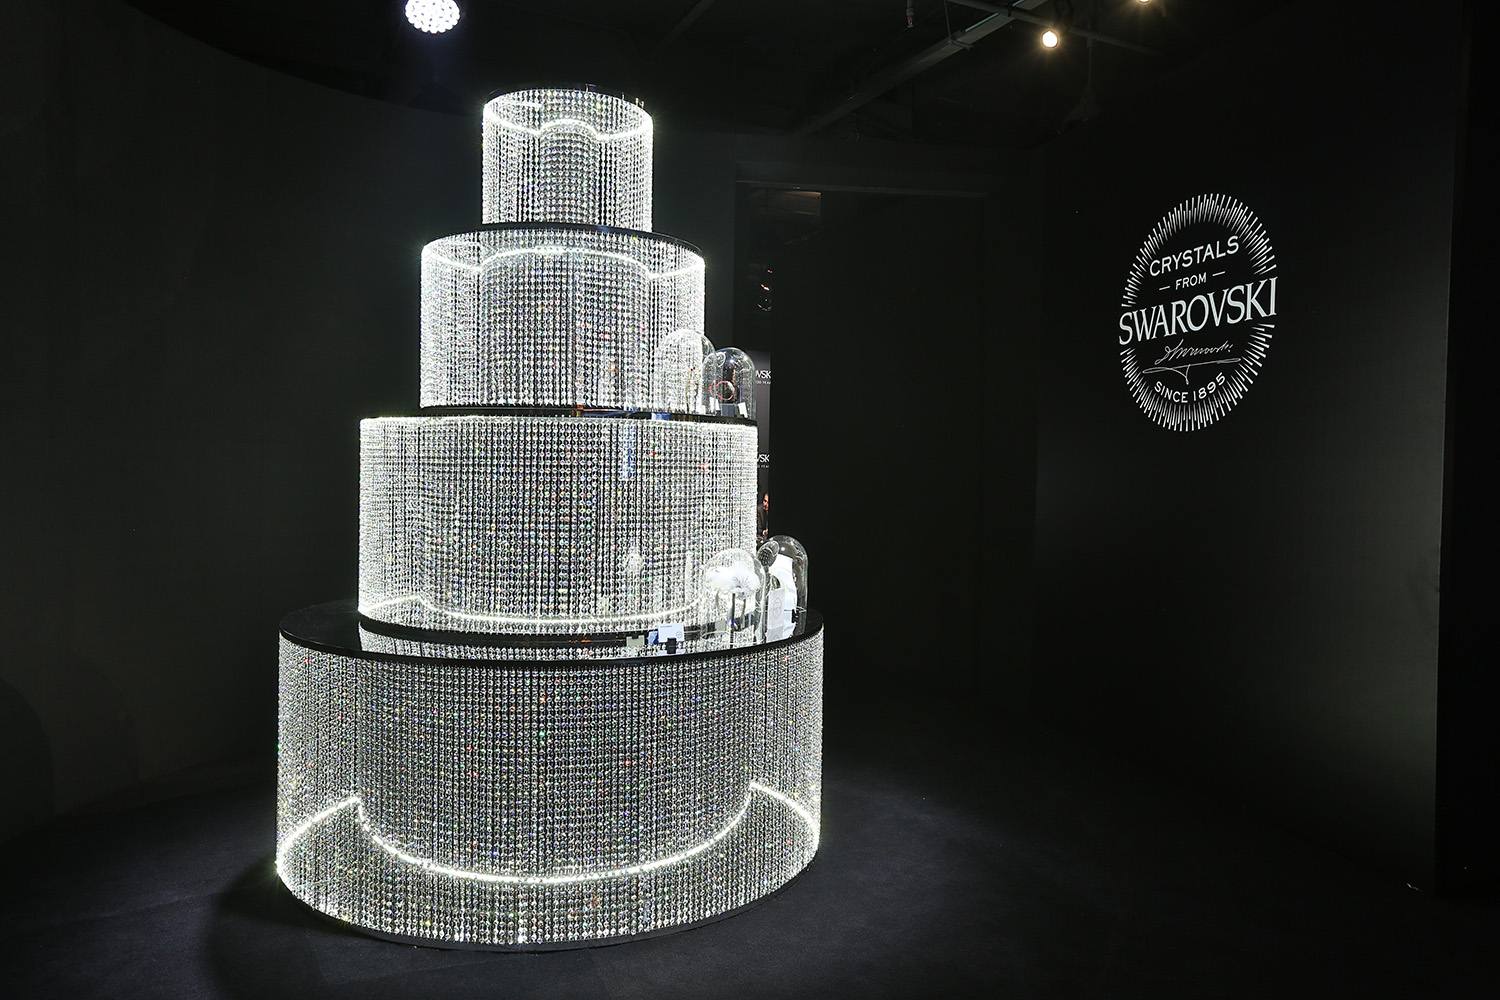 SWAROVSKI_120周年特展，特色展品搶先看！由君旺水晶燈飾以上百萬顆水晶打造、價值上千萬的水晶蛋糕，為施華洛世奇慶生_S.jpg